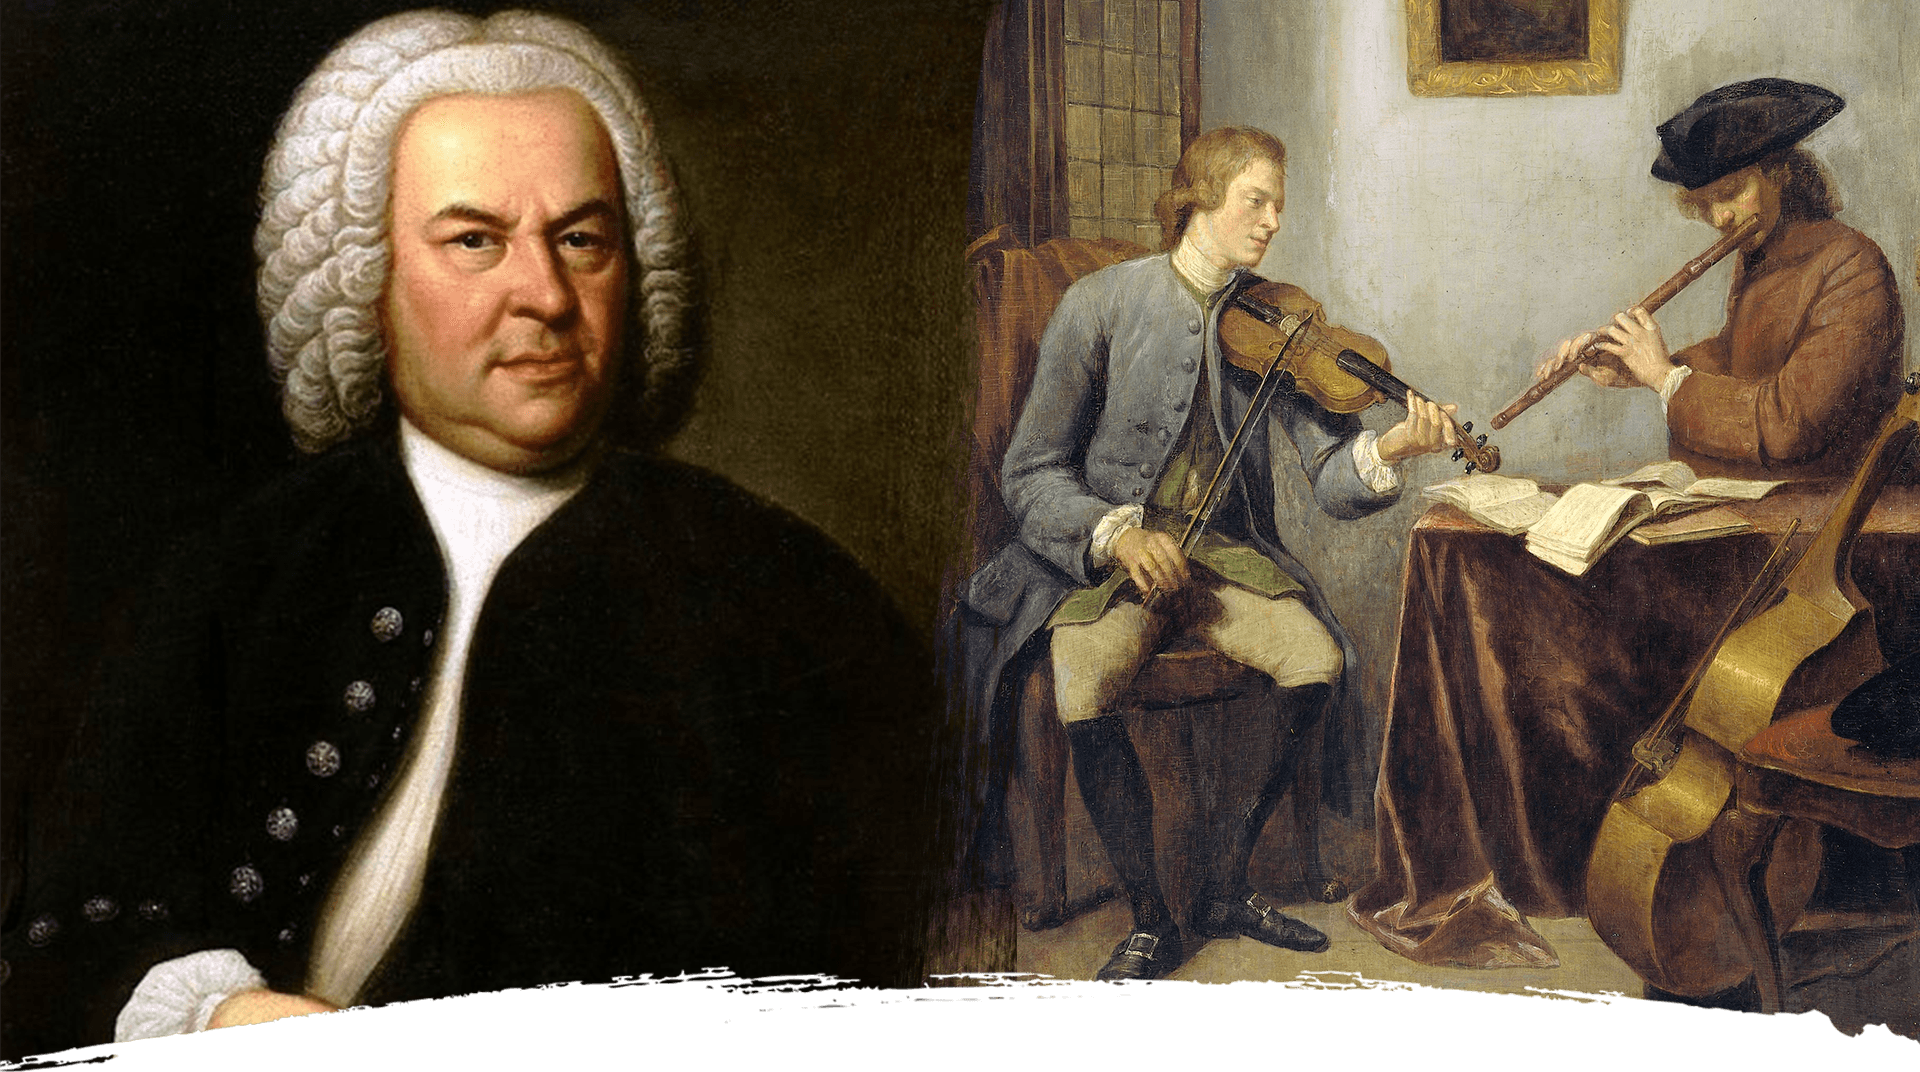 Bach og barokkens basstemmer